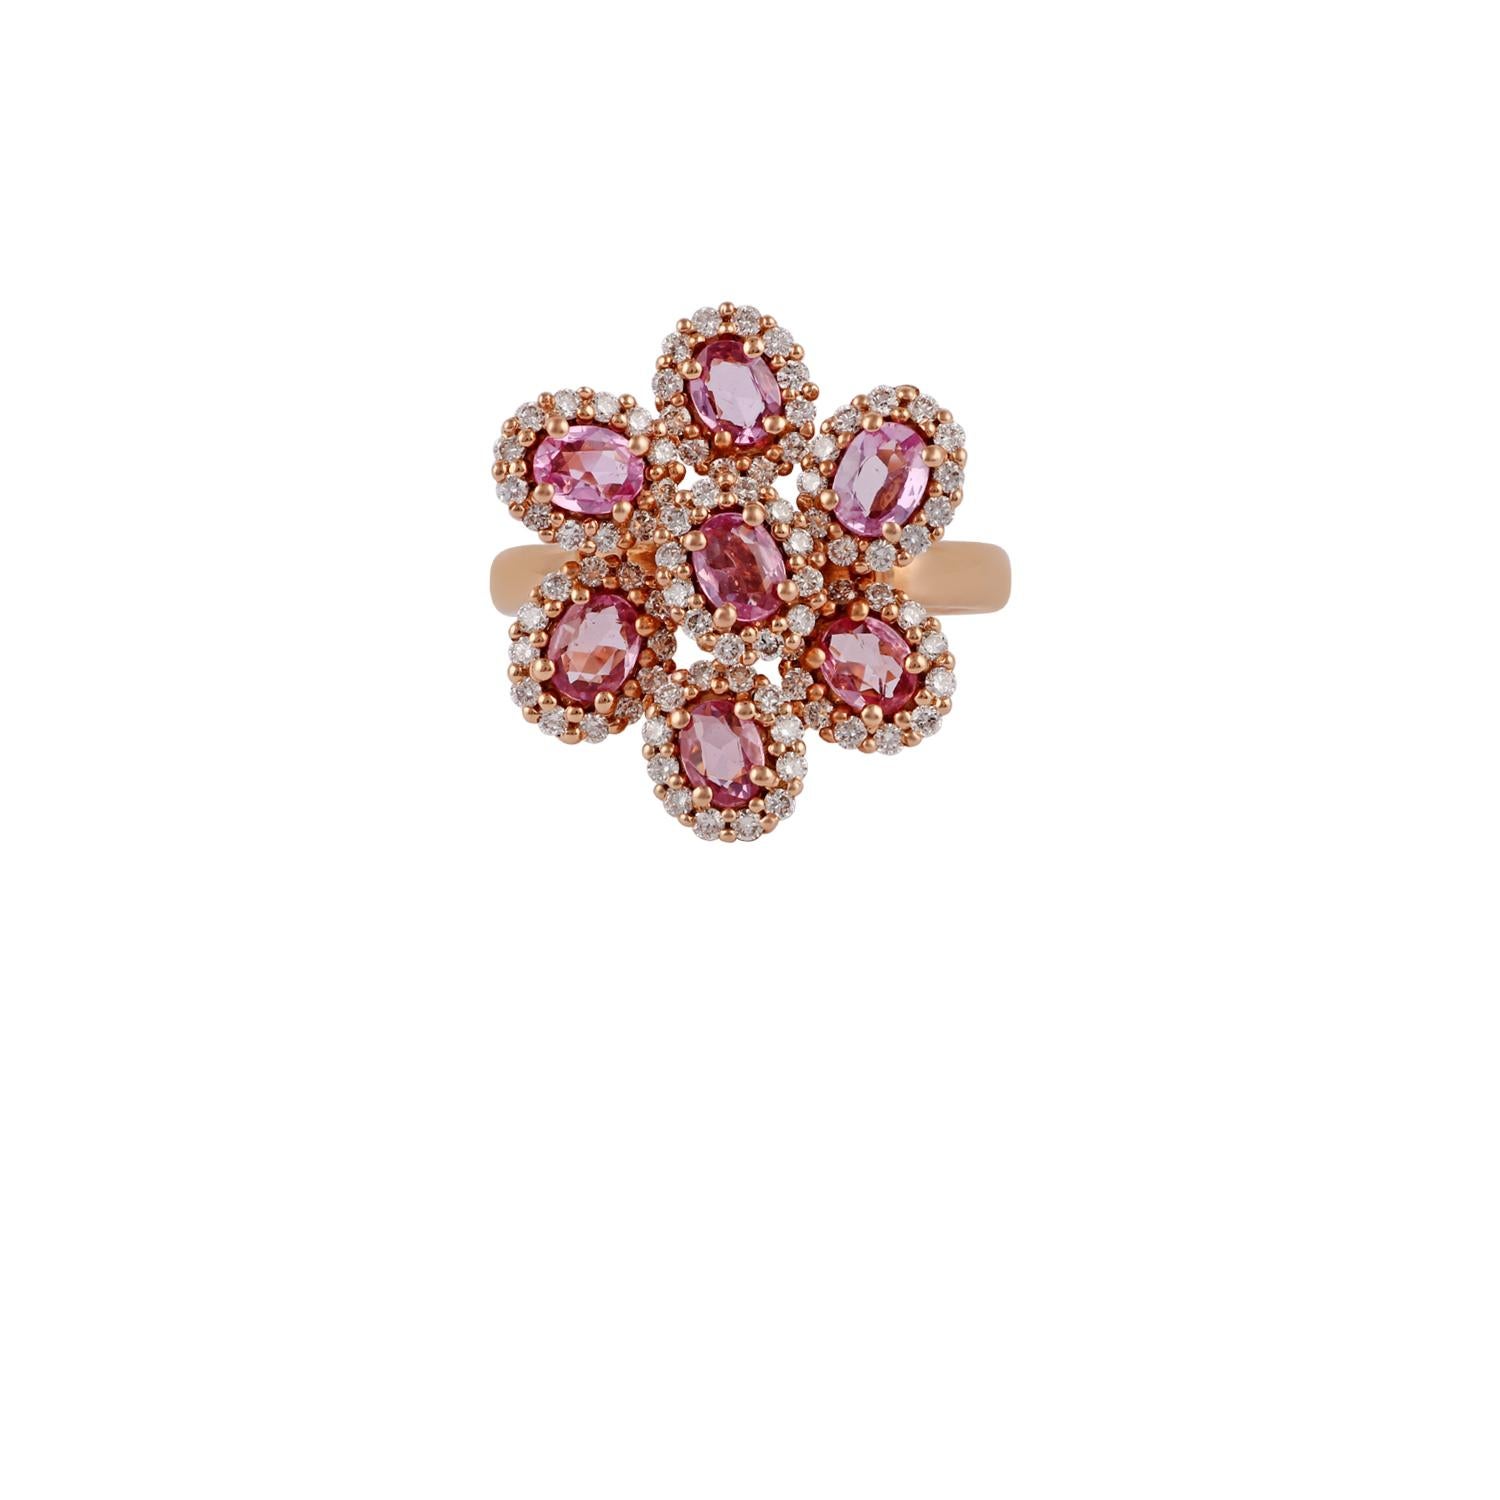 Dies ist ein Designer floralen Muster Ring in 18k Roségold mit 7 Stück rosa Saphiren Gewicht 1,34 Karat mit runden geformten Diamanten Gewicht 0,60 Karat beschlagen, ist diese gesamte Ring in 18k Roségold Gewicht 6,55 Gramm beschlagen, in diesem